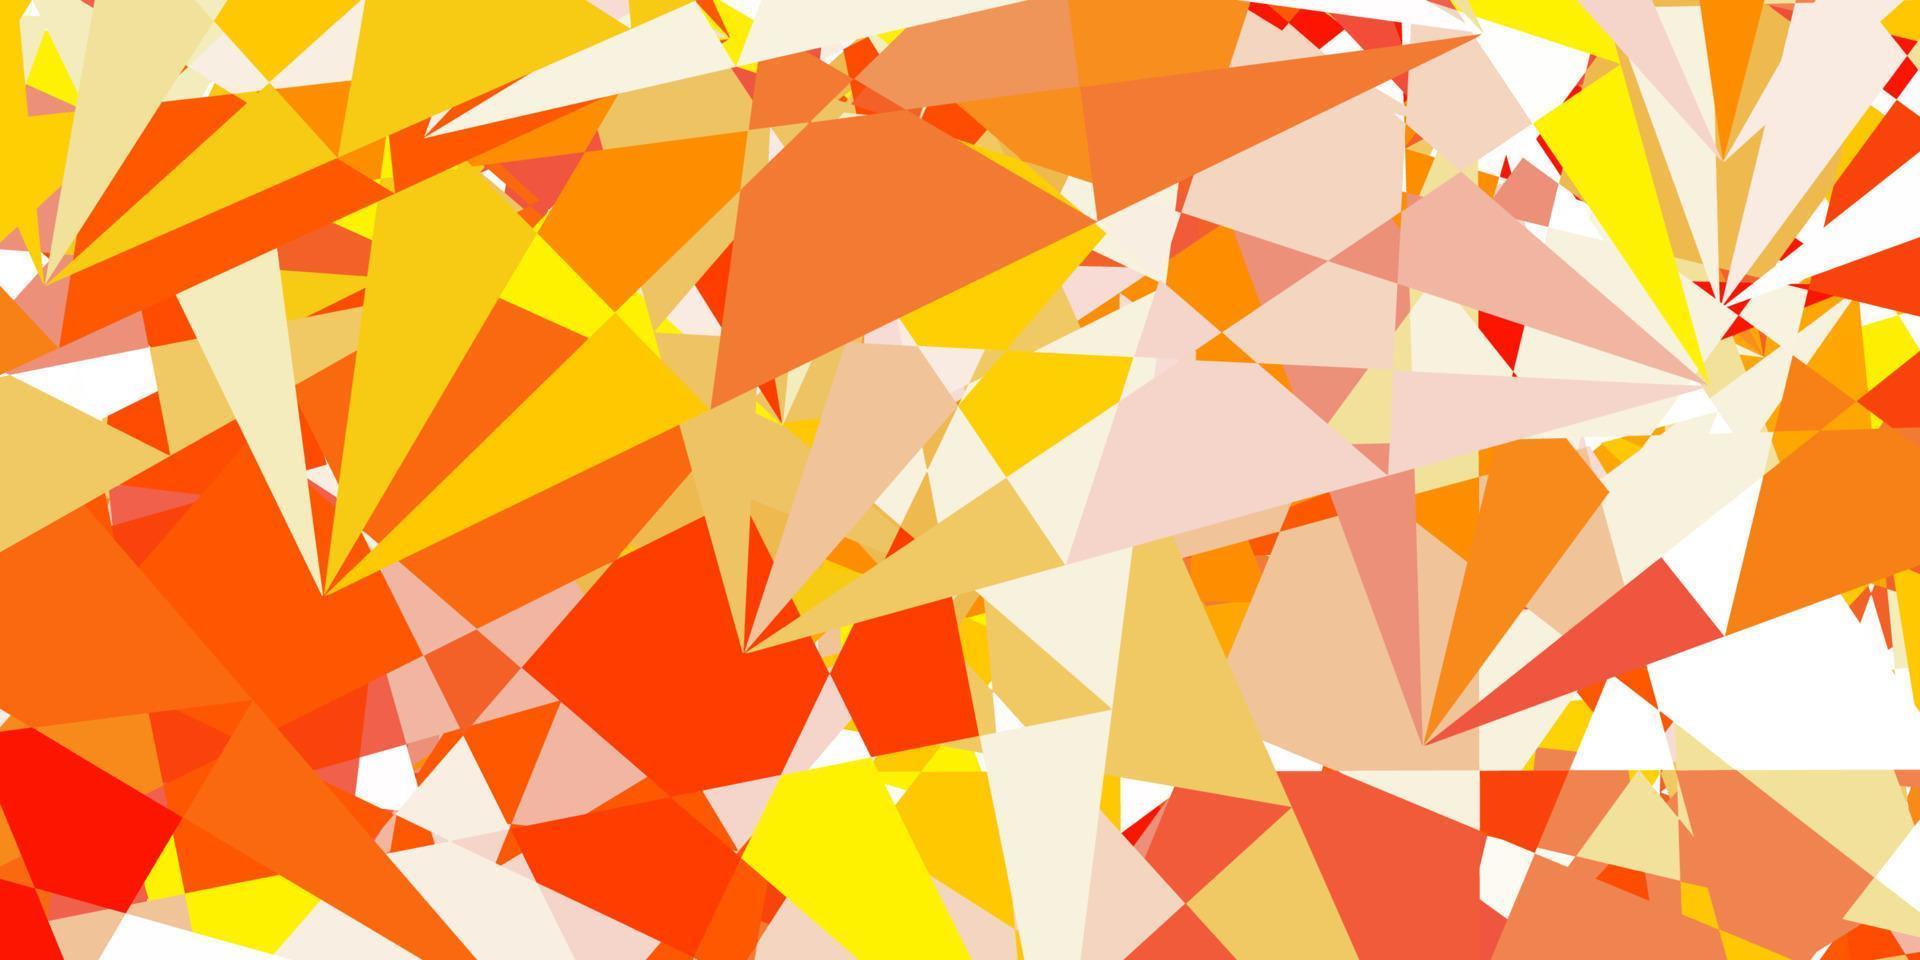 ljus orange vektor bakgrund med trianglar, linjer.